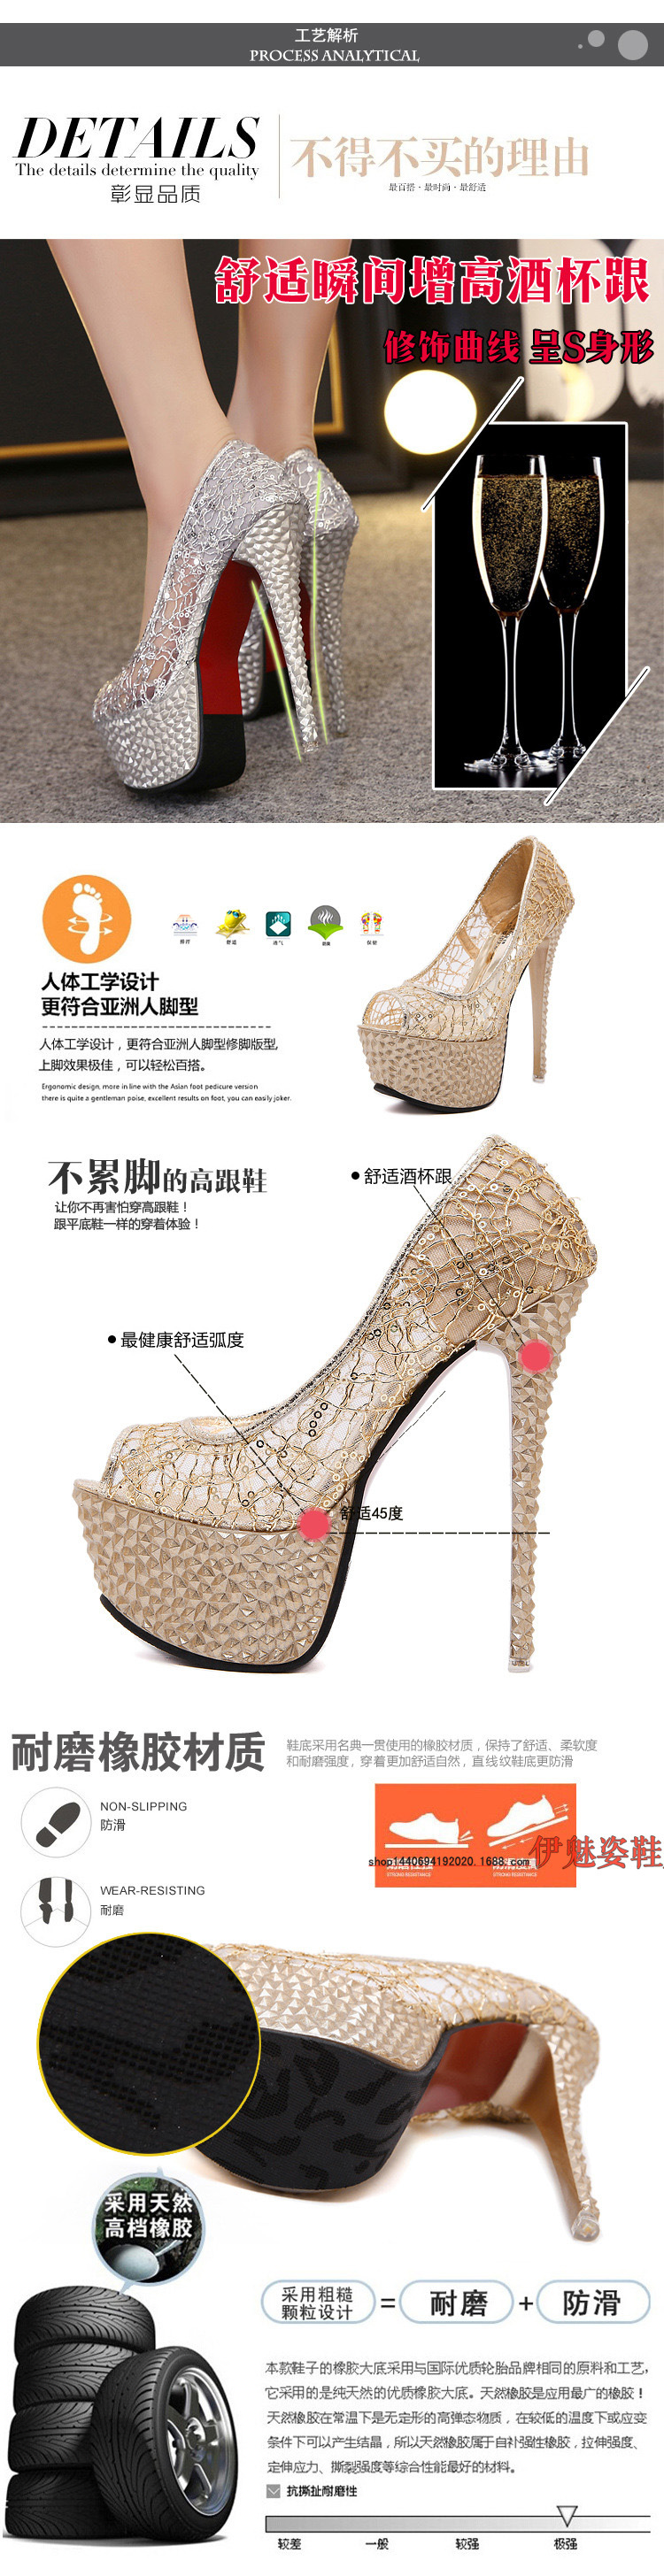 Chaussures tendances femme en Fil de dentelle cousu - Ref 3353585 Image 19